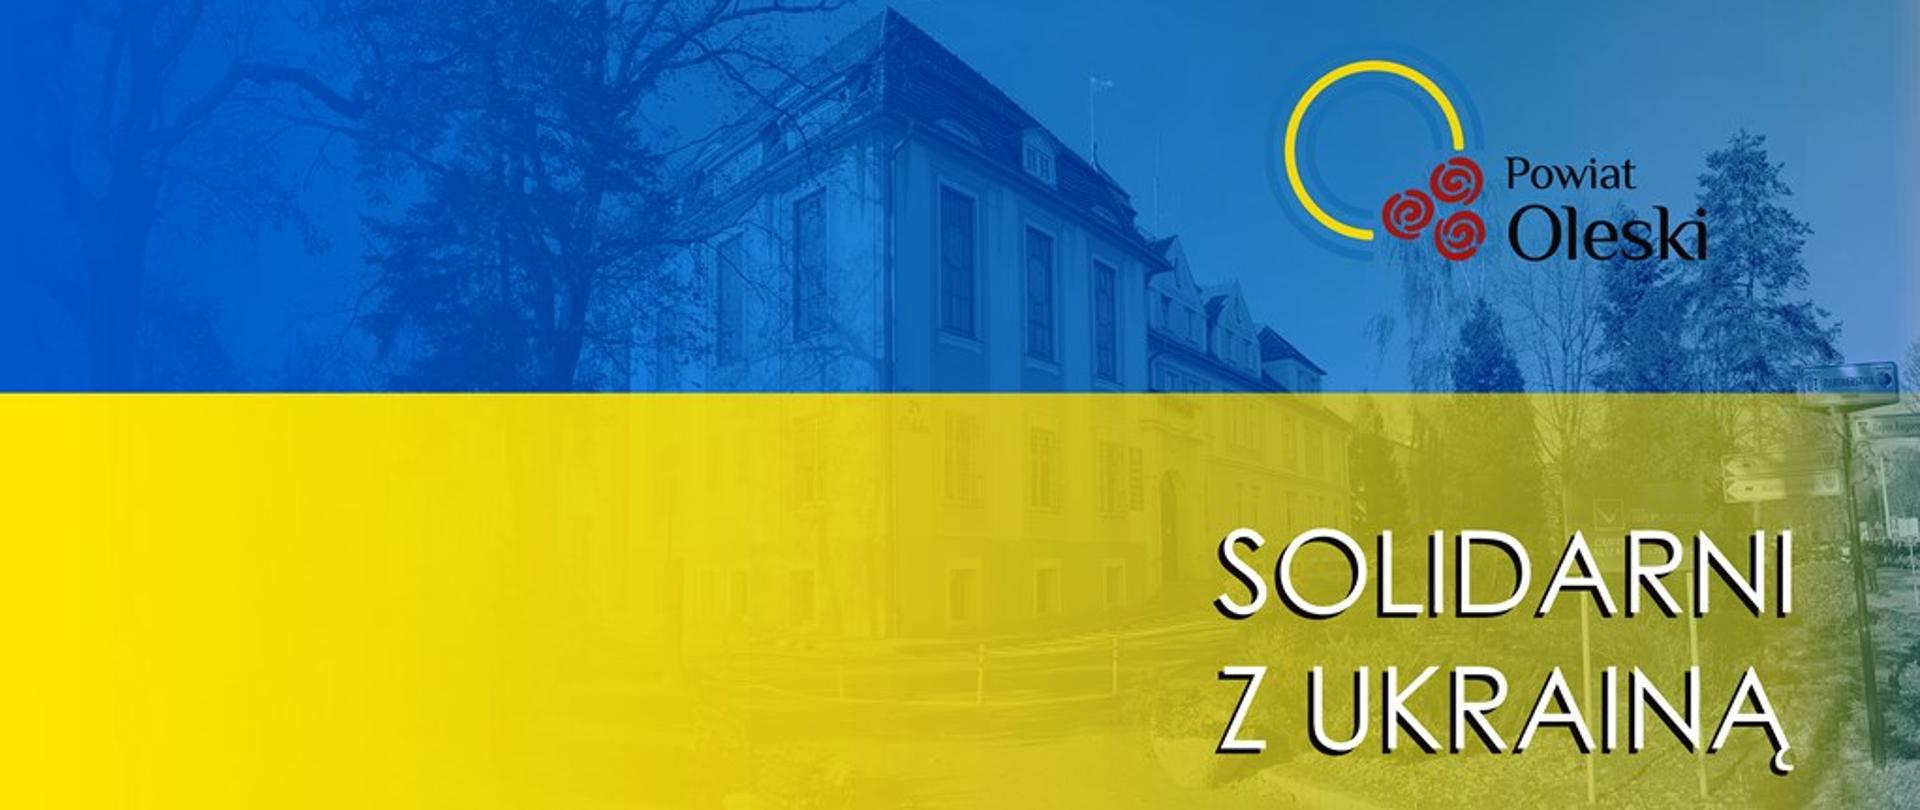 Flaga Ukrainy - Solidarni z Ukrainą